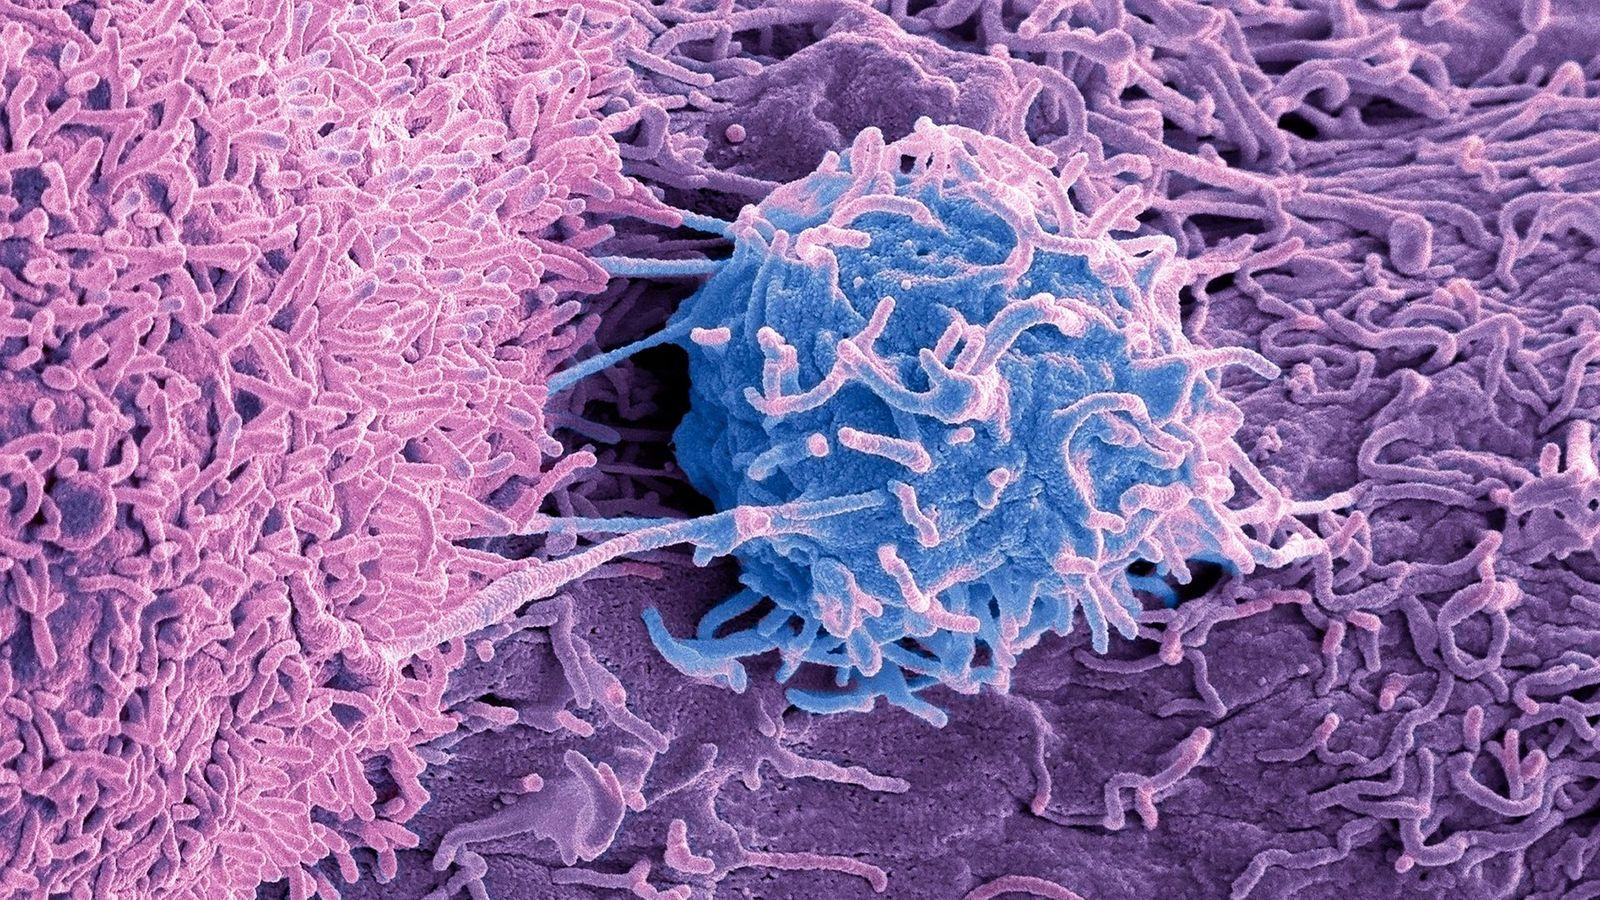 072039029 tumorlerde yasayan mikroplar kanserin nedeni ve tedavisiyle ilgili ne tur ipuclari veriyor 1